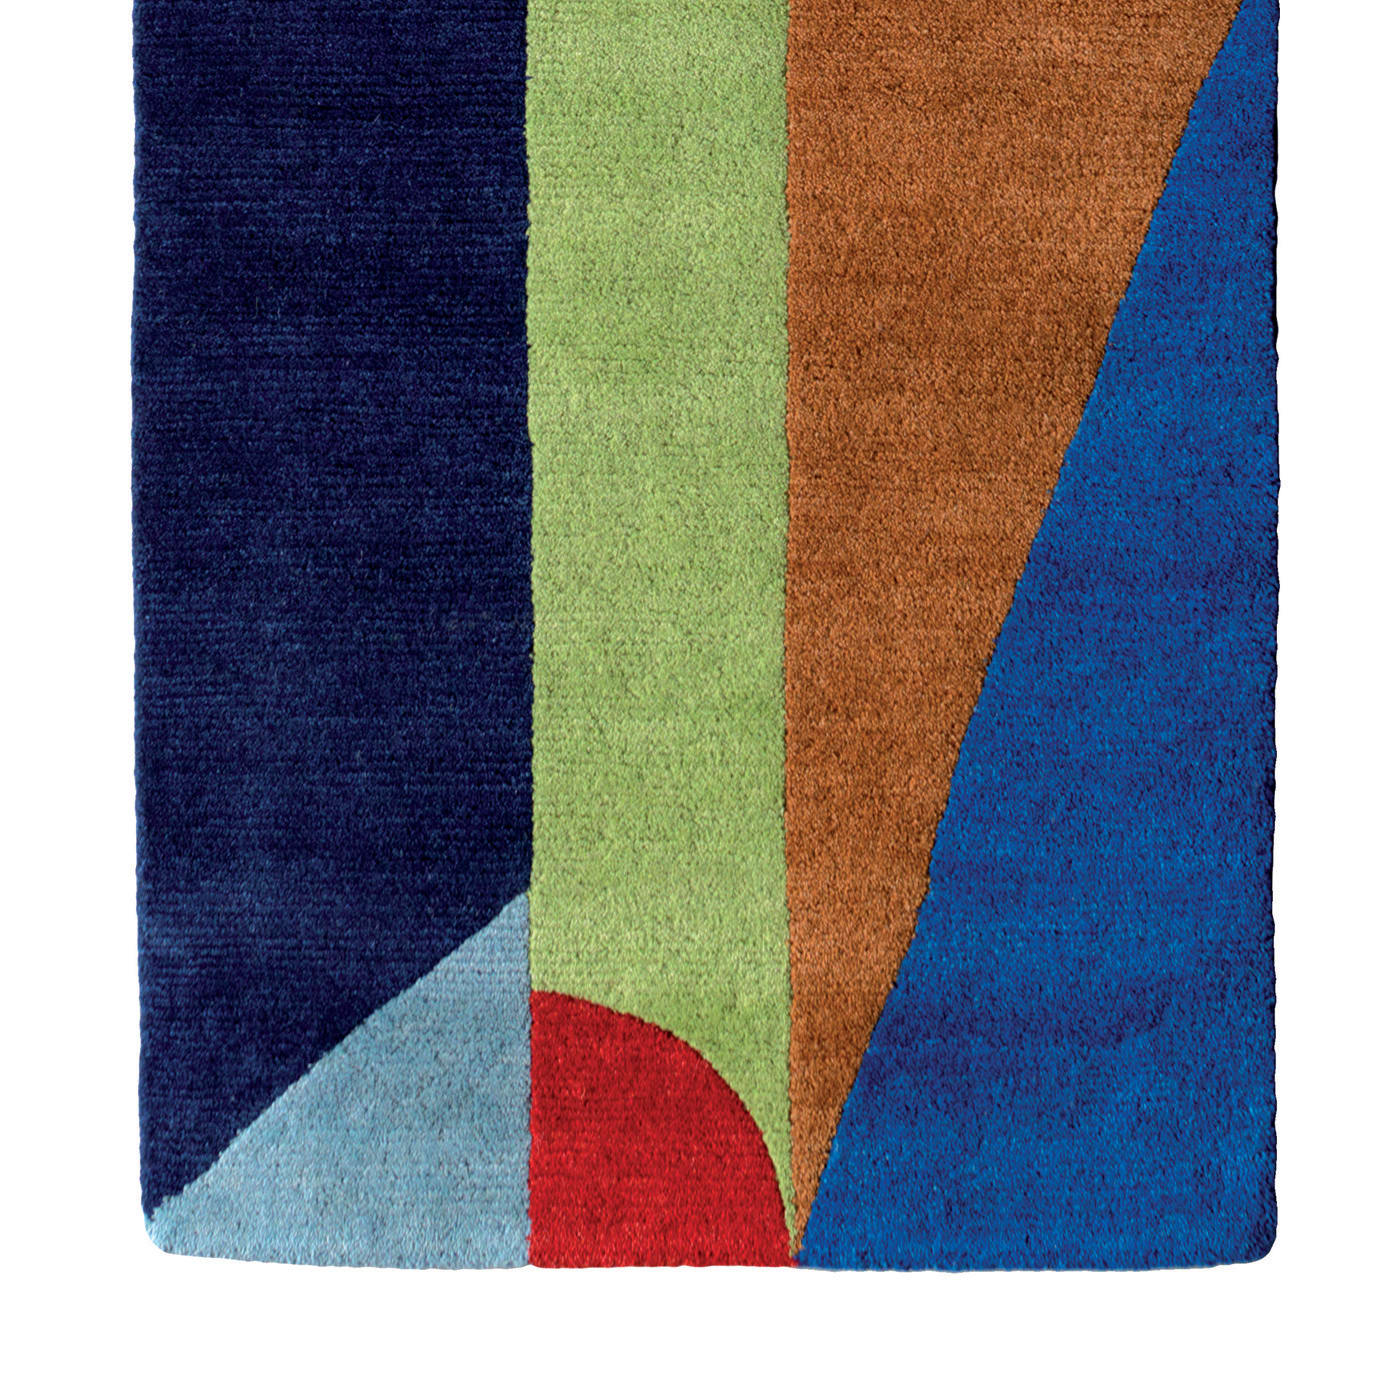 CEM2 Carpet by Chung Eun Mo - Post Design - Memphis